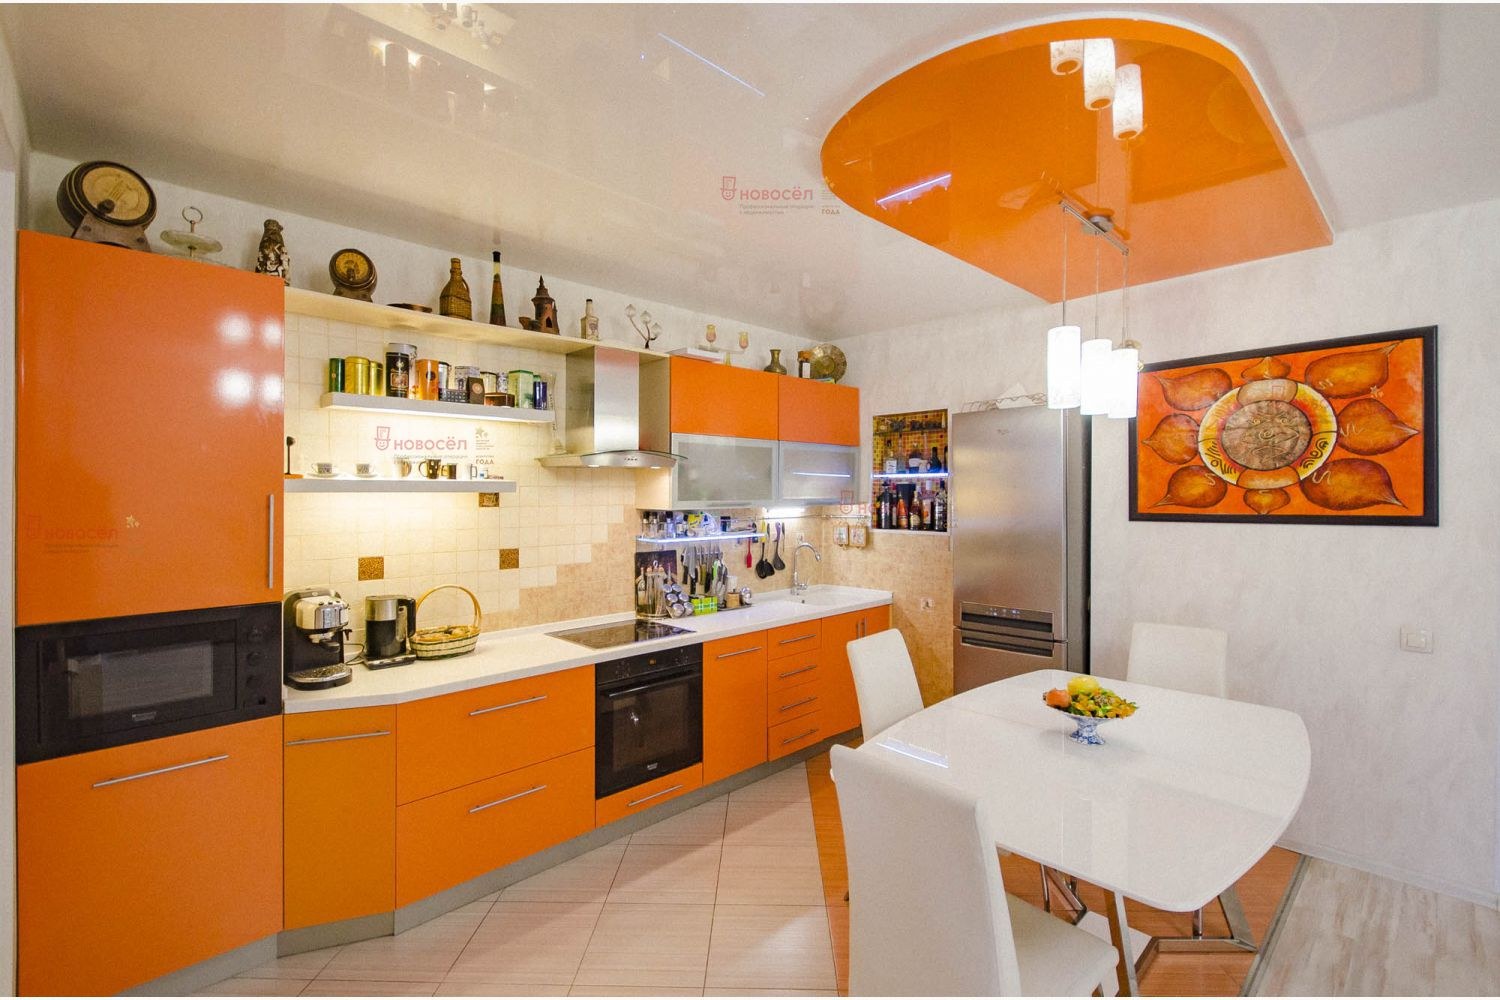 Оттенки оранжевого: с чем сочетается апельсиновый цвет в интерьере кухни со стенами и гарнитуром, фартуком